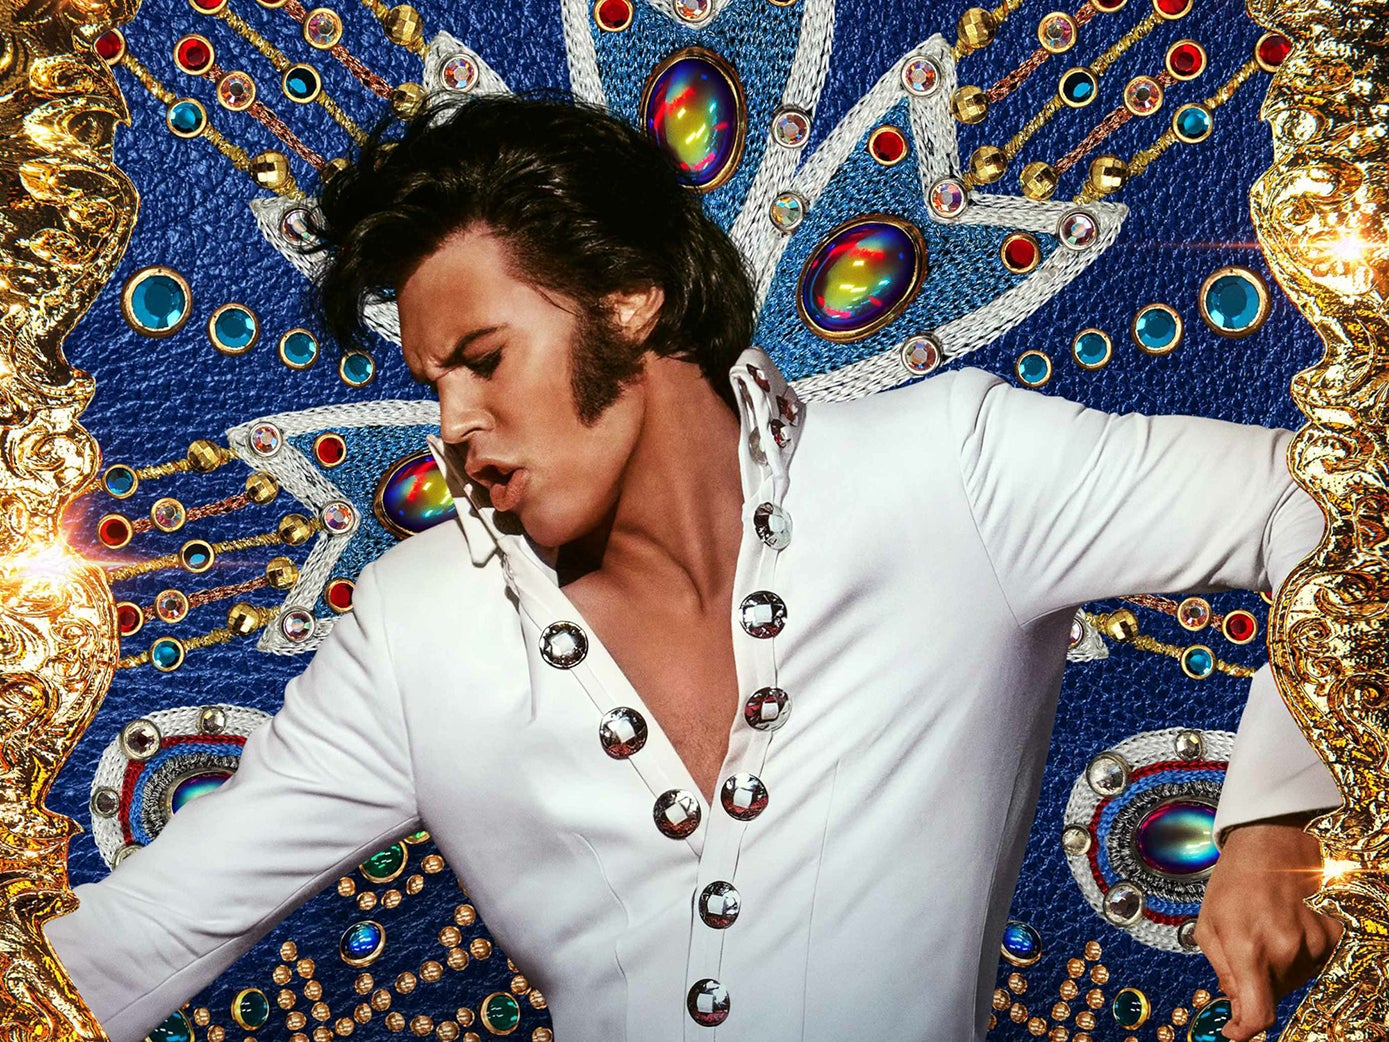 Immagine di Elvis – Dio salvi il Re, perché lui non può farlo